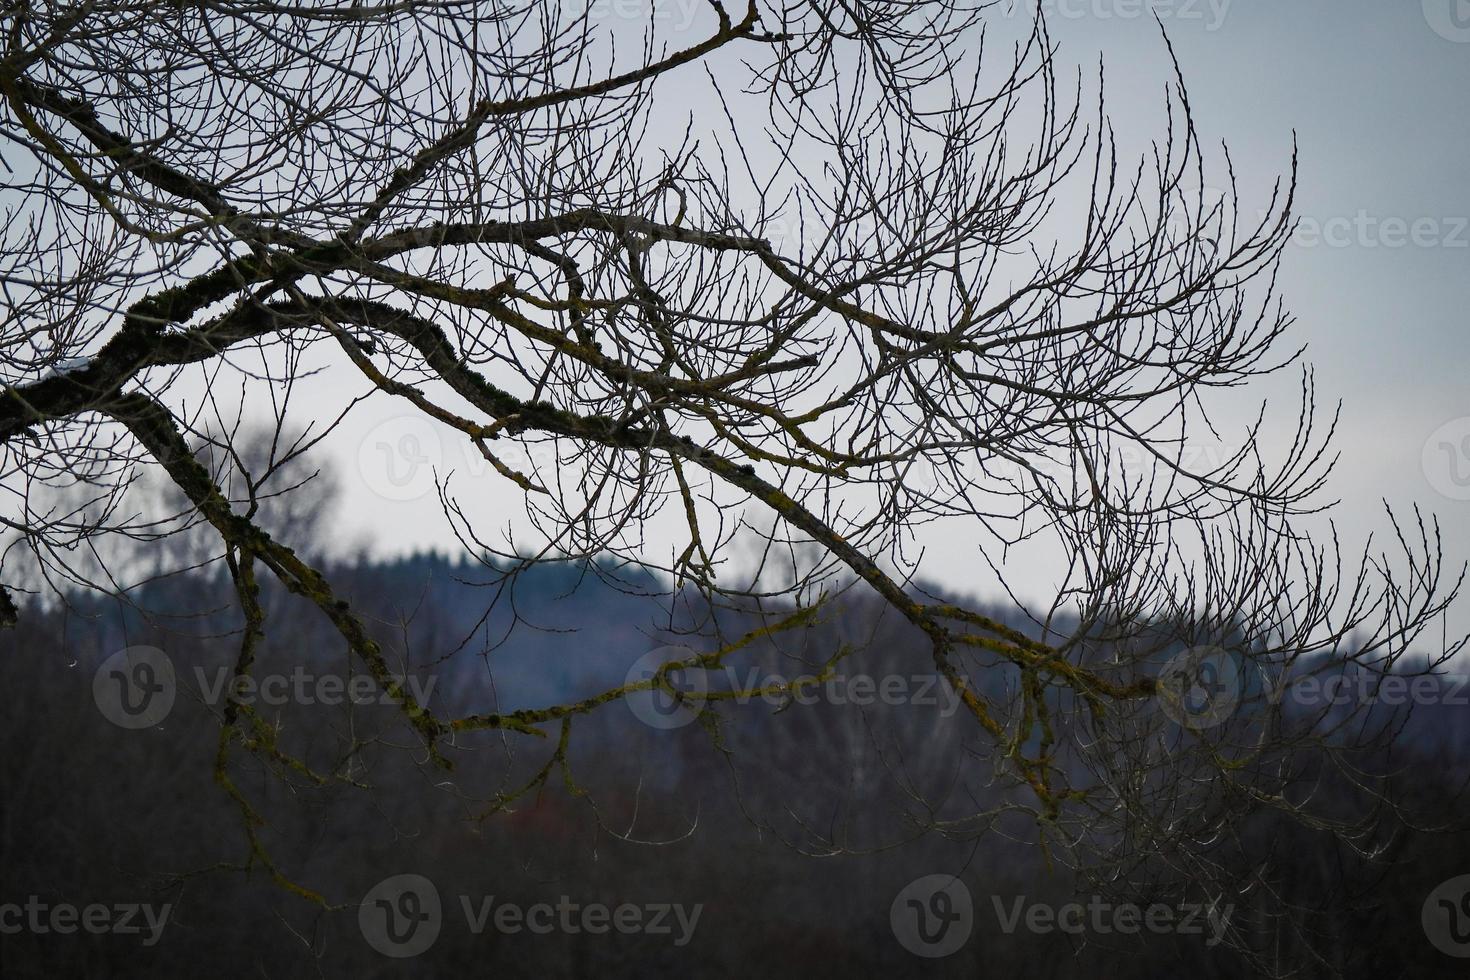 stor bladlösa träd gren silhuett i ljus grå himmel över skog på kulle synlig på de bakgrund foto